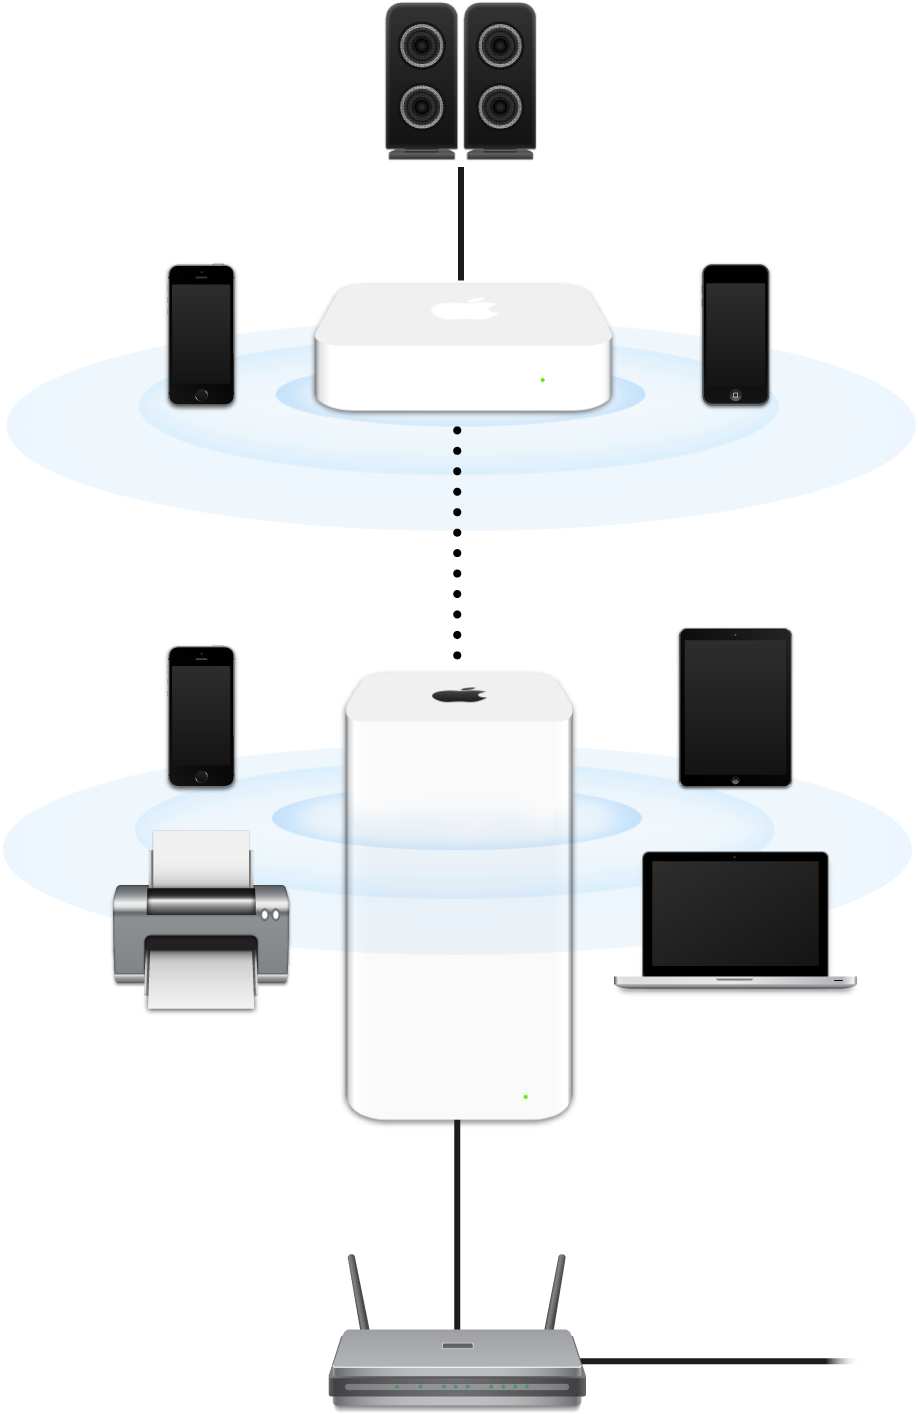 Bir modeme bağlı olan ve çeşitli aygıtlara aktarım yapan AirPort Extreme ve AirPort Express içeren genişletilmiş ağ.